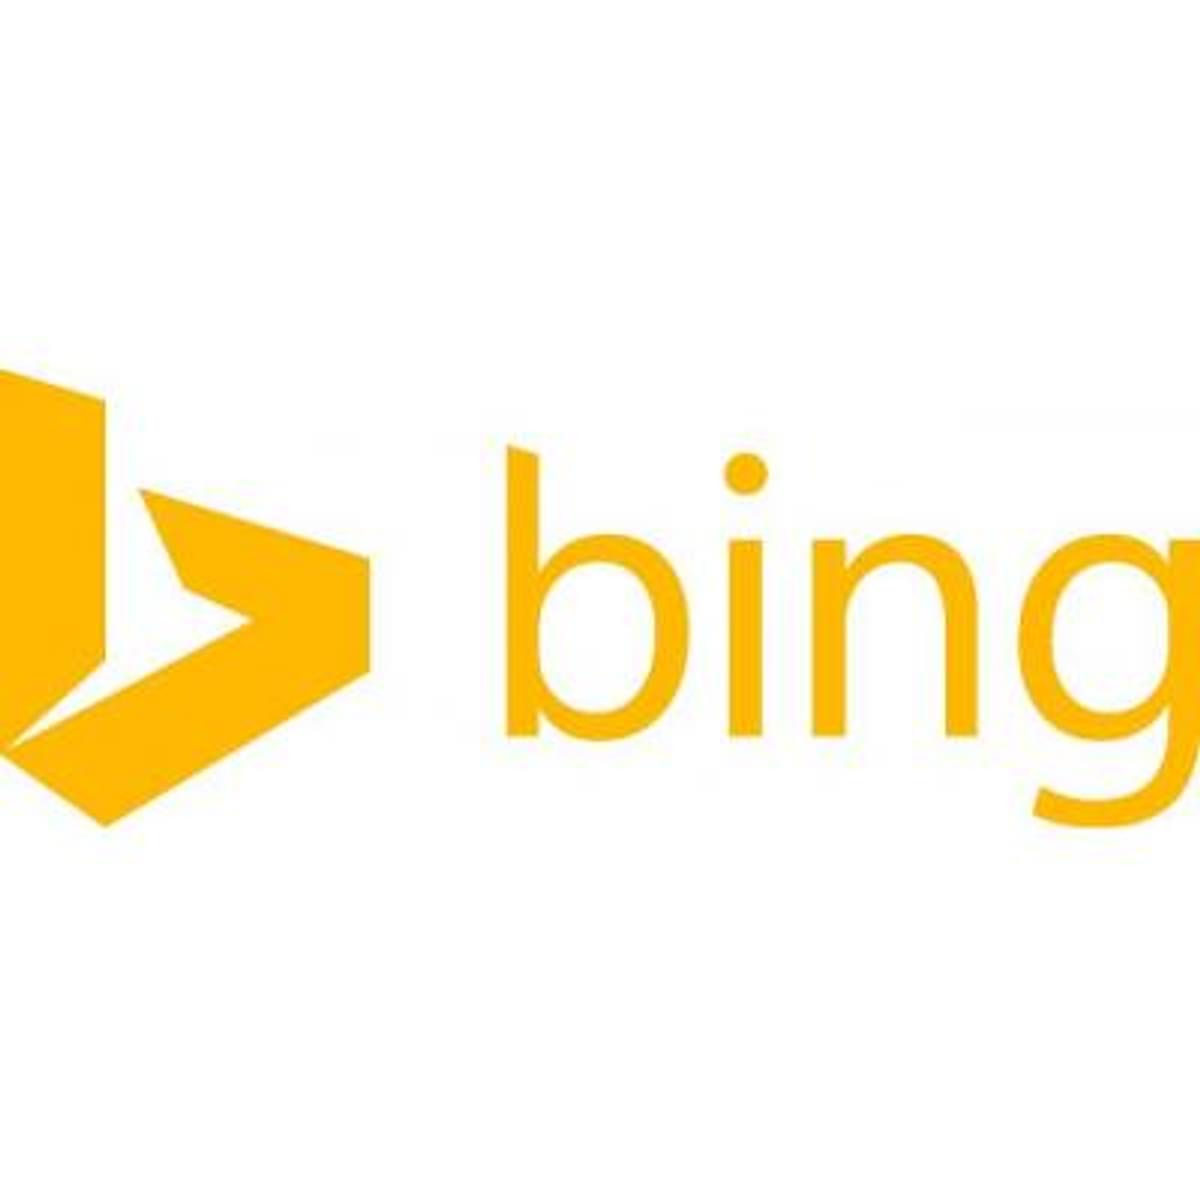 Functie voor trending zoekwoorden verdwenen uit Bing na ongepaste resultaten image